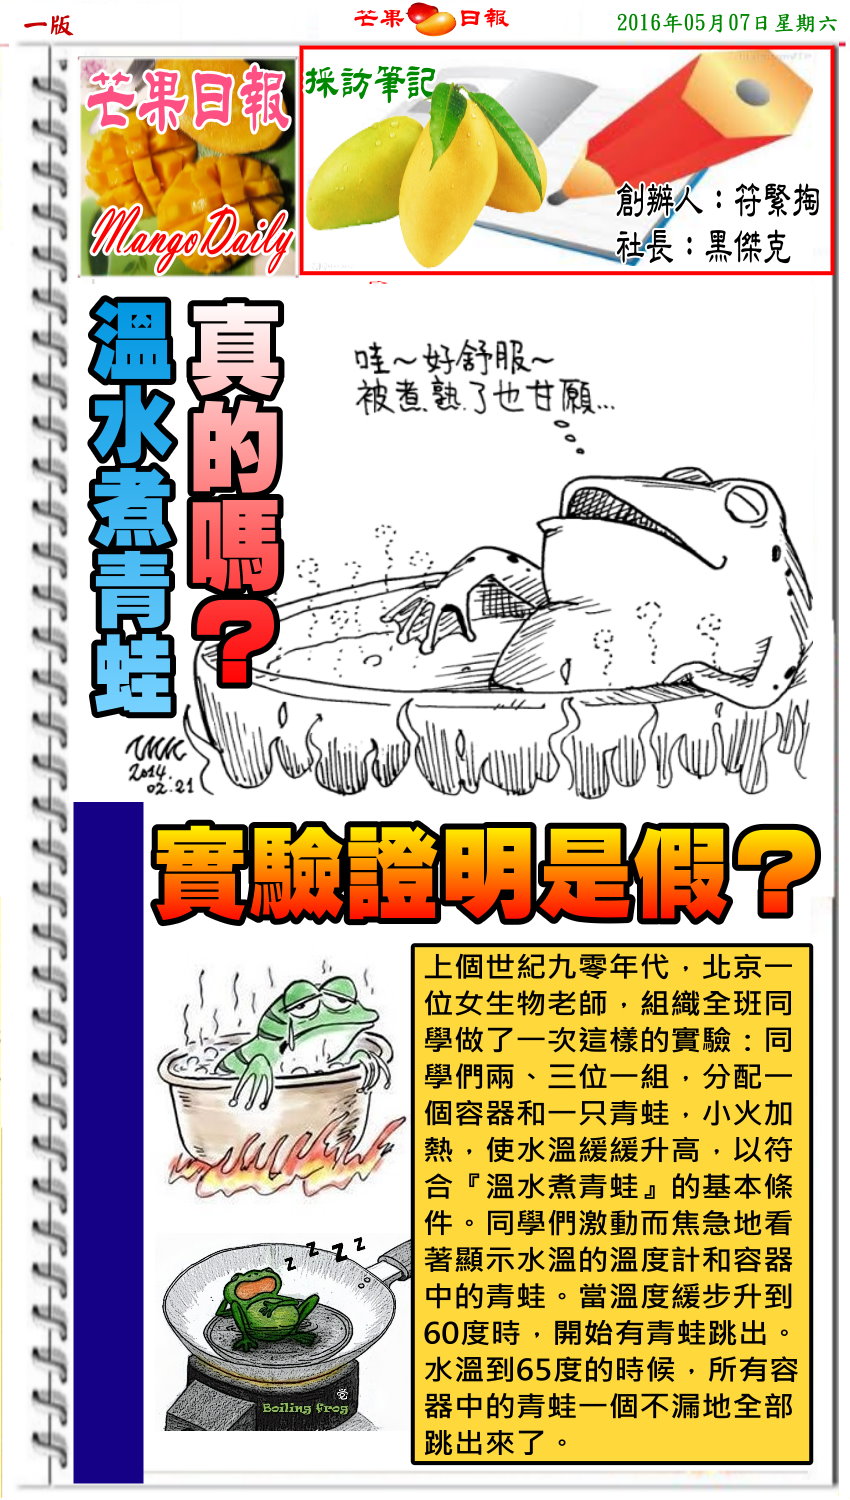 160507芒果日報--採訪筆記--溫水煮青蛙實驗，證明青蛙會跳出